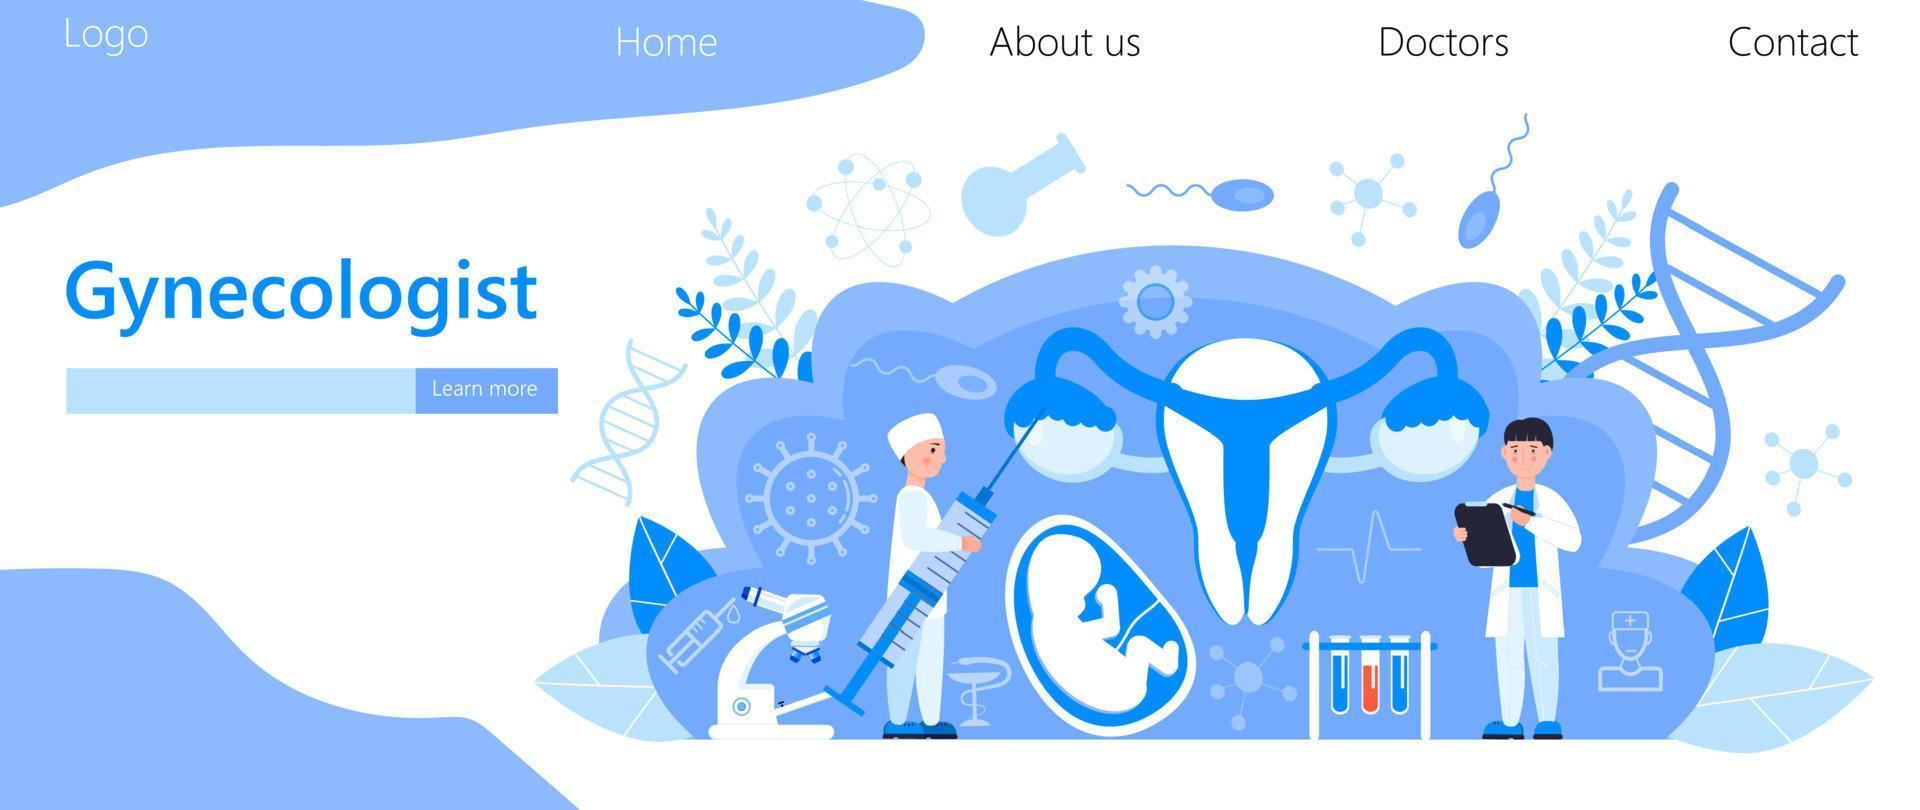 vettore di concetto del ginecologo per la pagina di destinazione medica. gli specialisti di ginecologia curano il paziente. pianificazione familiare, gravidanza, illustrazione del trattamento dell'infertilità. malattie veneree della donna.